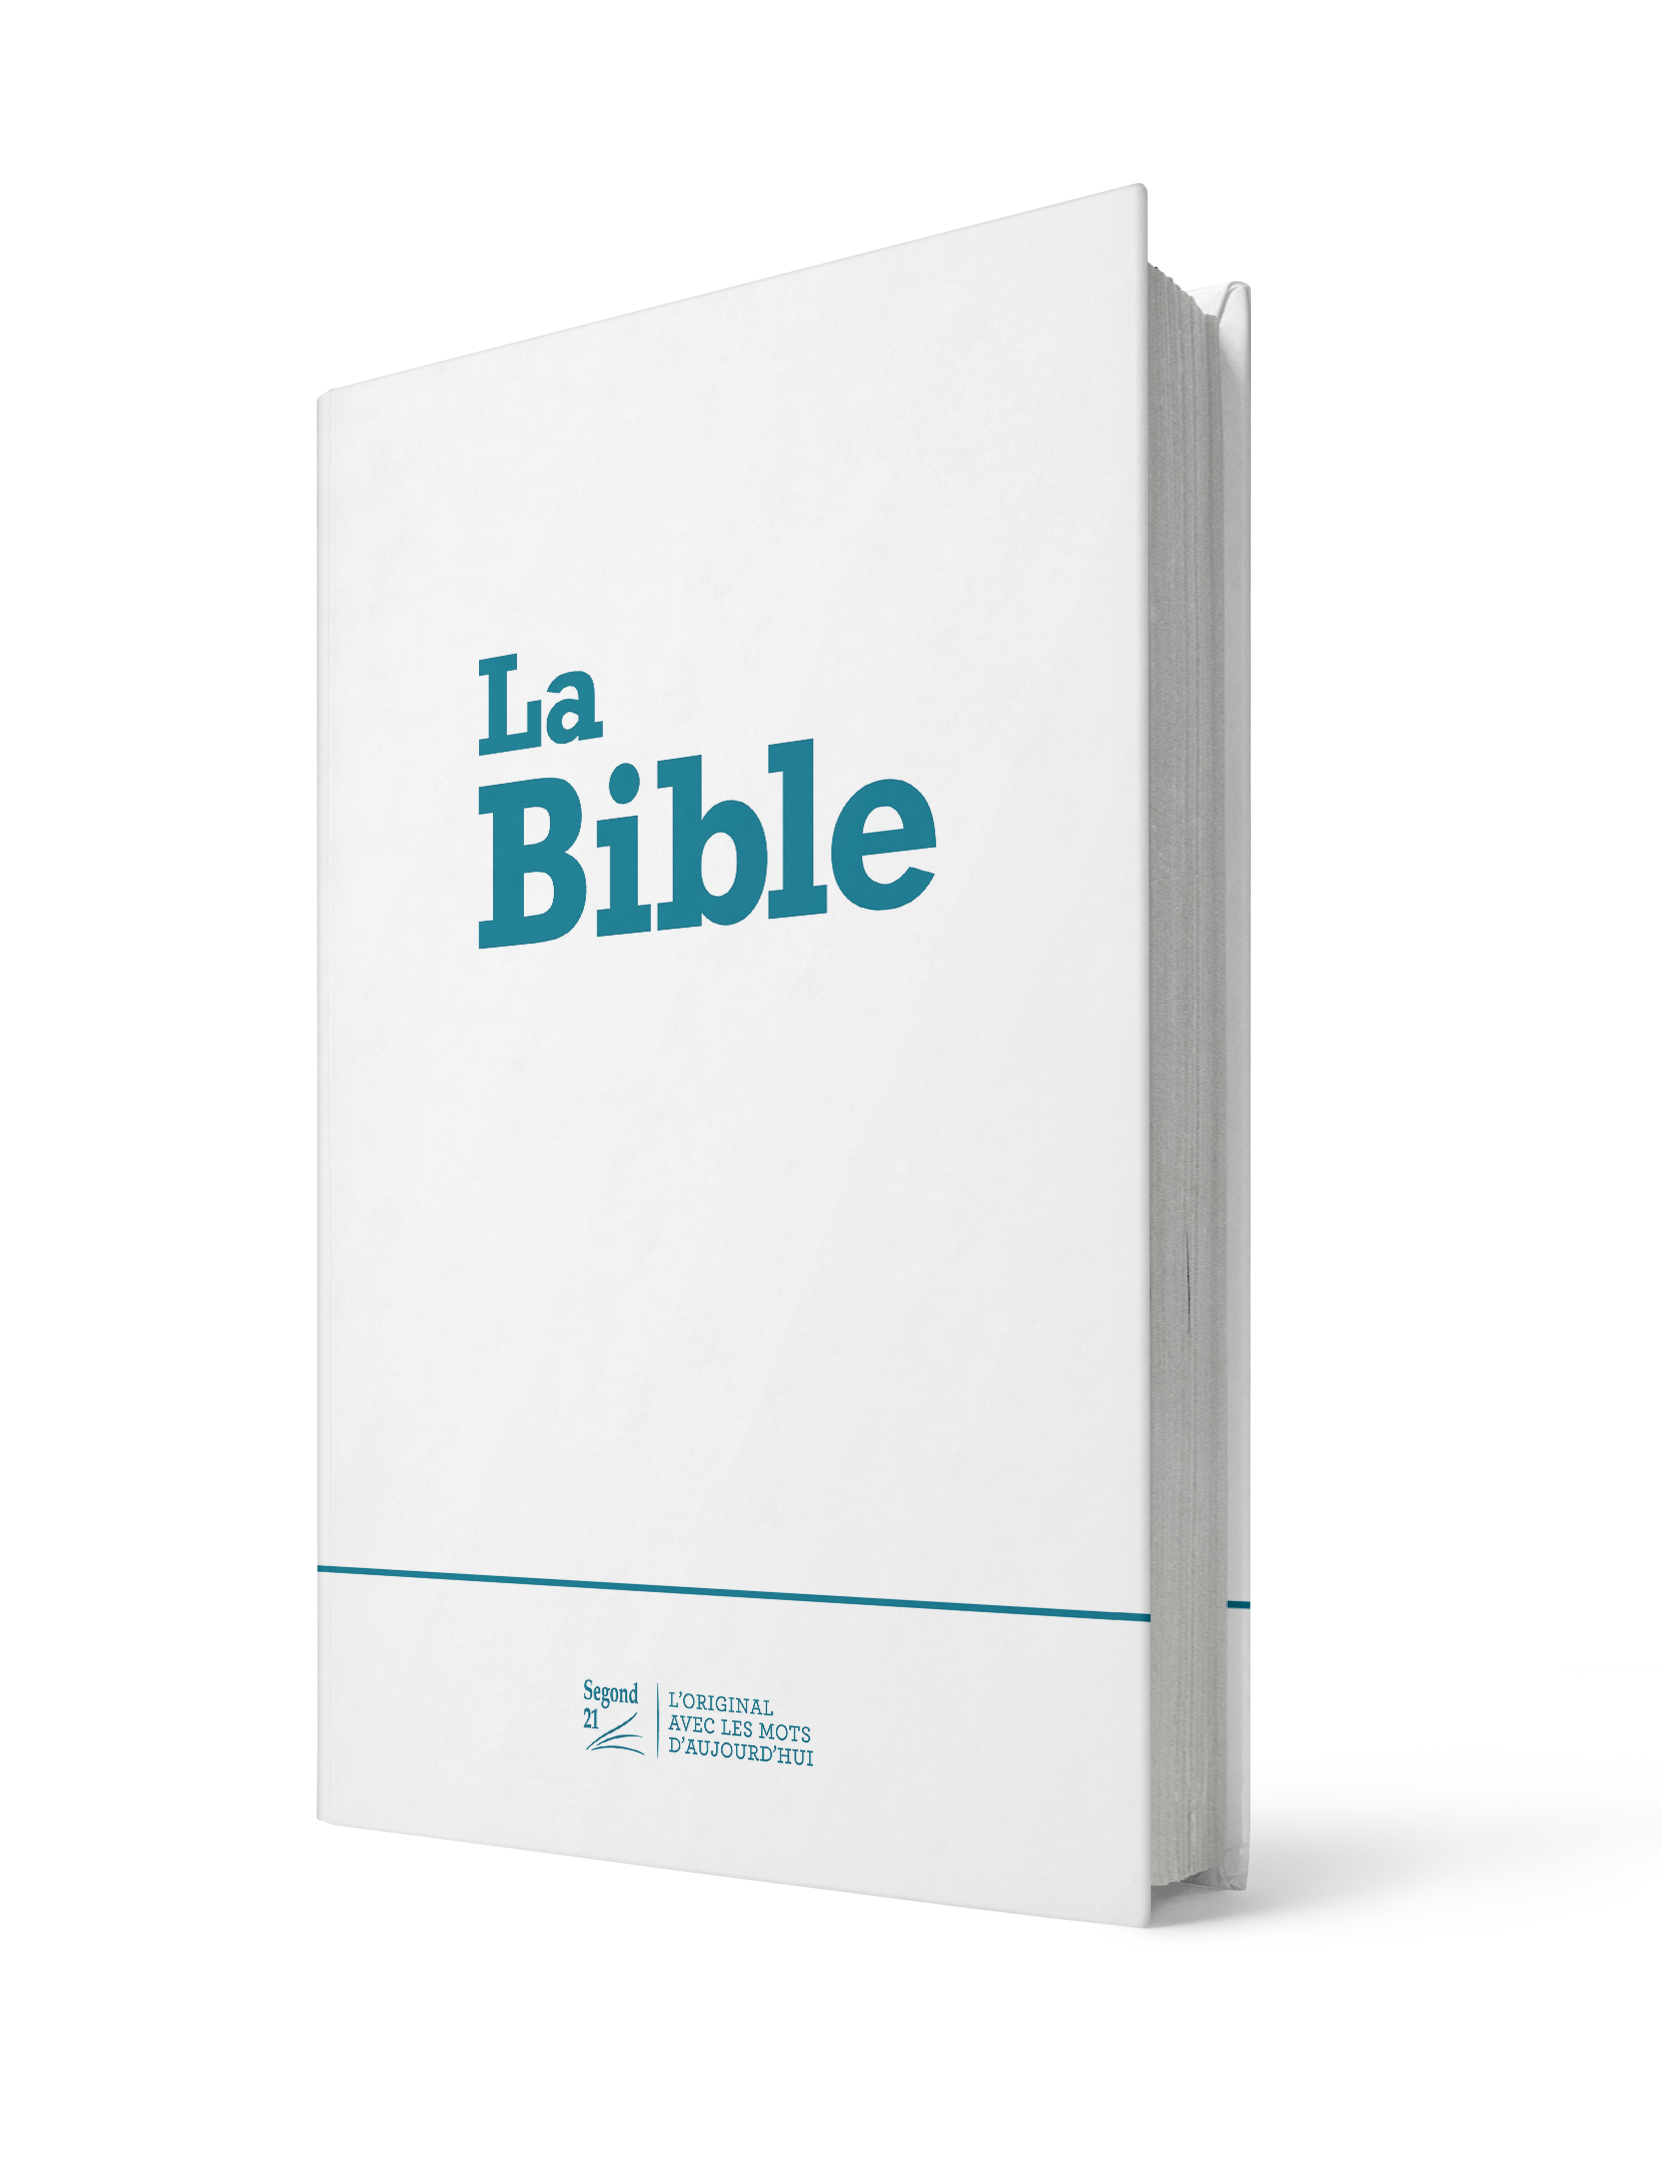 Bible Segond 21 compacte - Couverture rigide imprimée